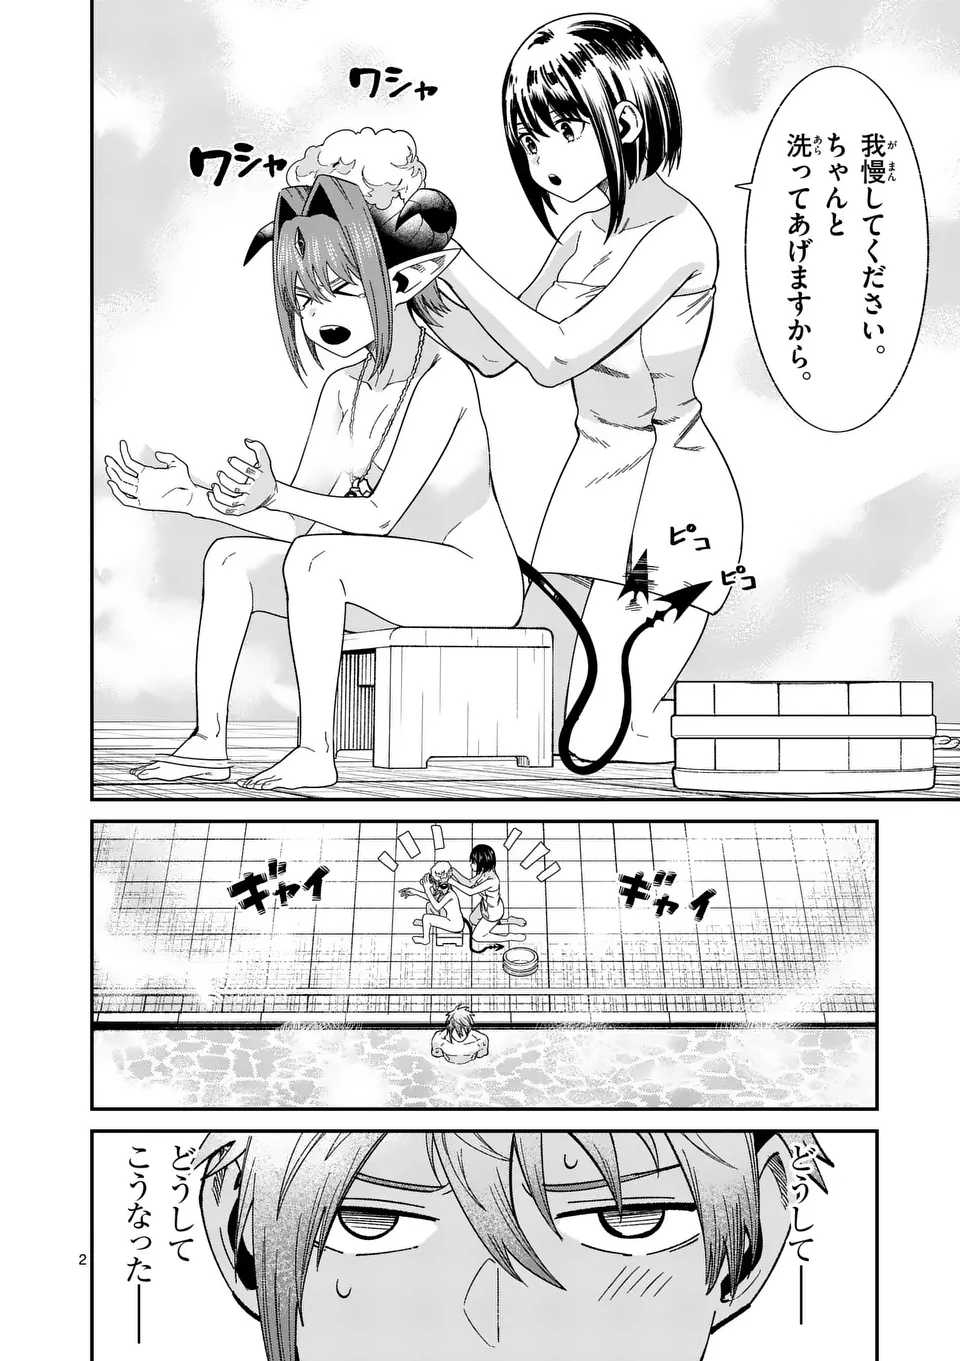 Power-Hara Genkai Yuusha, Maougun kara Koutaiguu de Scout sareru - Chapter 8 - Page 2